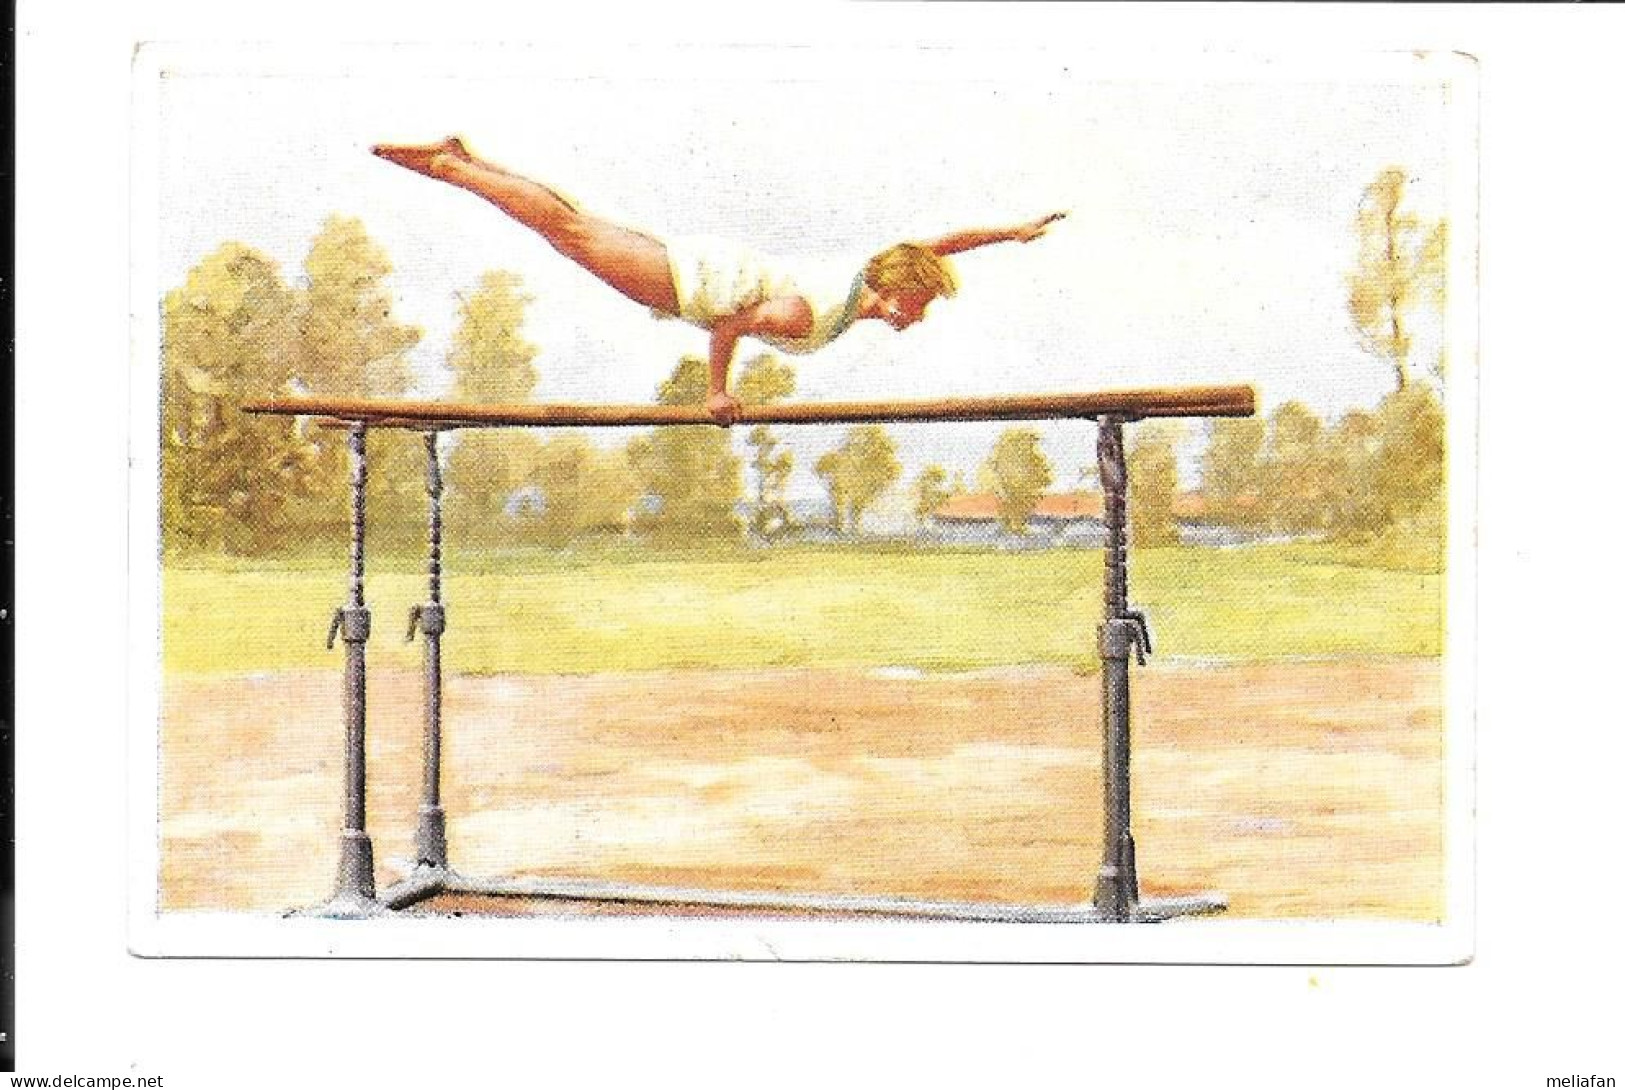 CK27 - IMAGE CIGARETTES SANELLA - GYMNASTIQUE - BARRES PARALLELES - Gymnastics